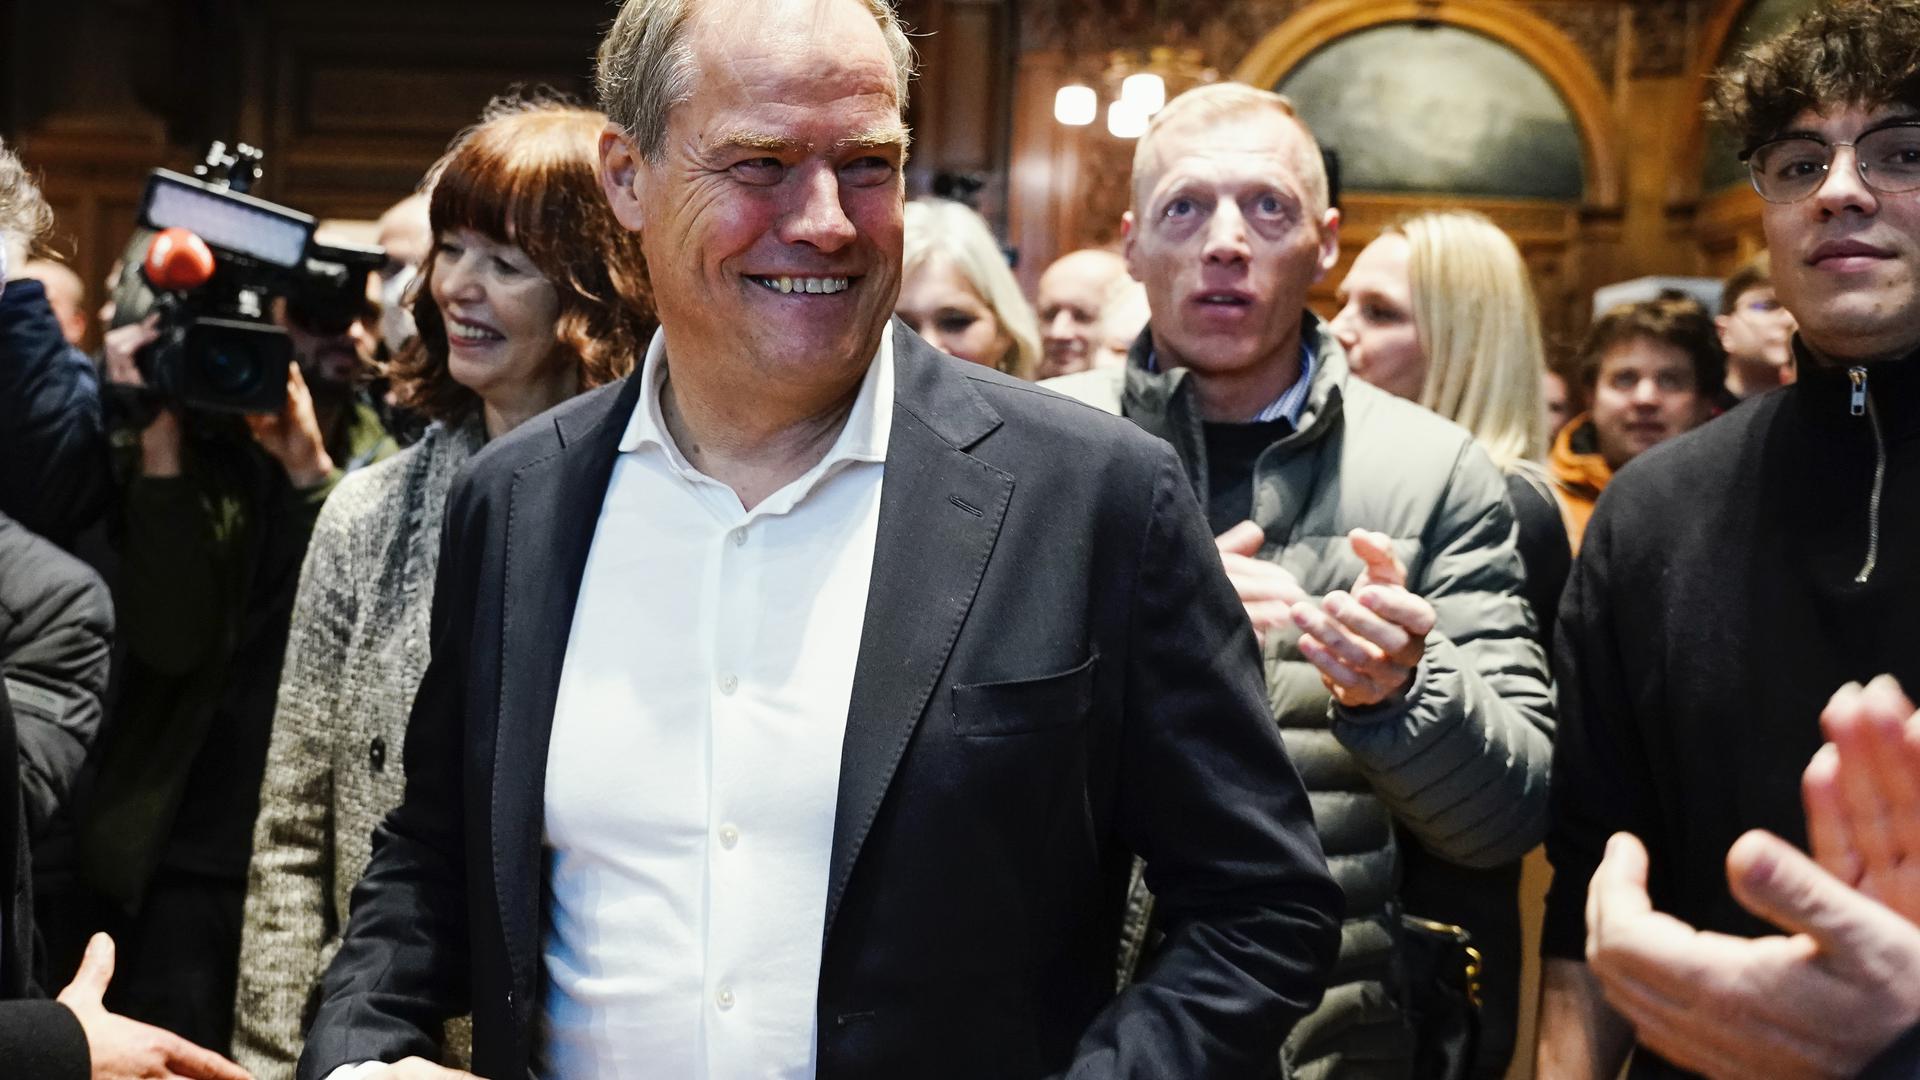 Geht als Favorit in den zweiten Wahlgang und hat Grund zur Freude: Eckart Würzner, parteiloser Oberbürgermeister der Stadt Heidelberg, verbuchte in der ersten Runde 45,89 Prozent der Stimmen. 